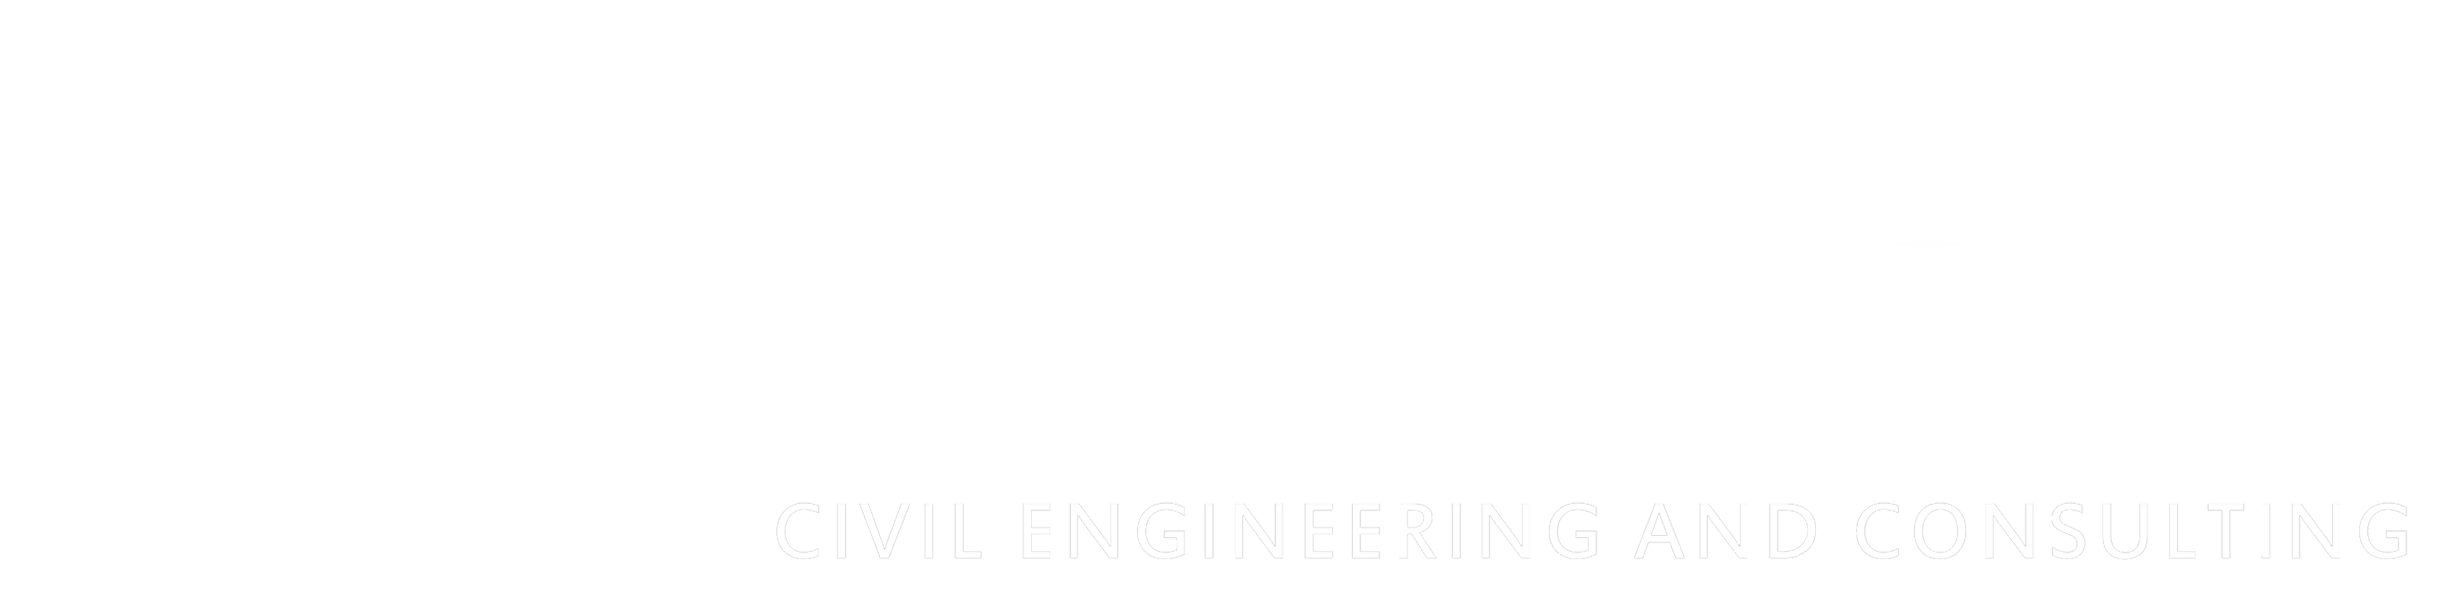 Venturi Engineers